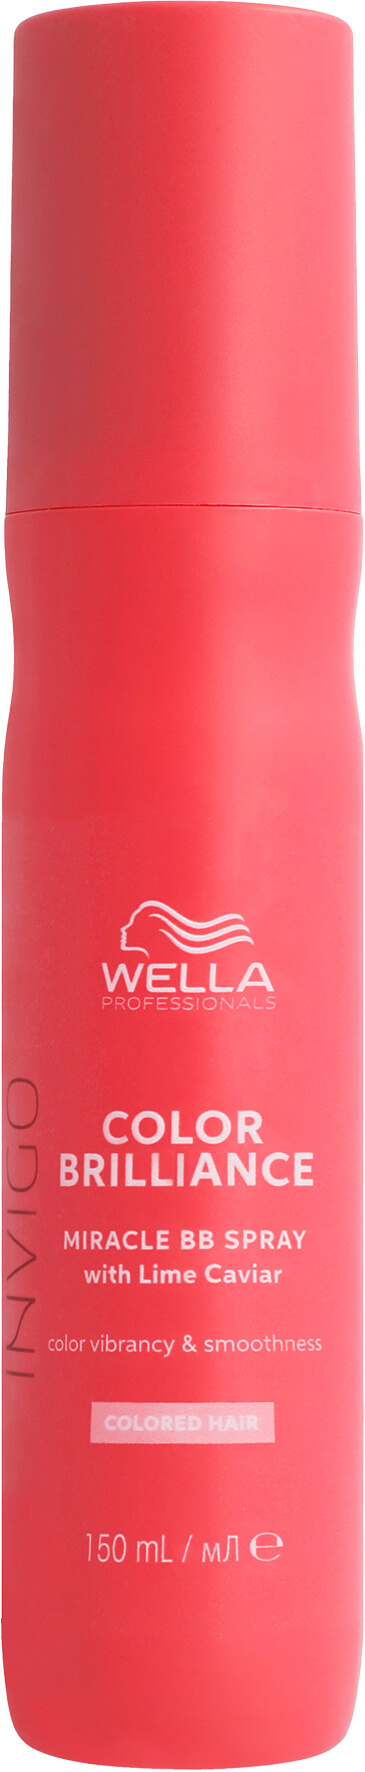 Wella Invigo Color Brilliance Leave-in Farbglanzspray 150ml